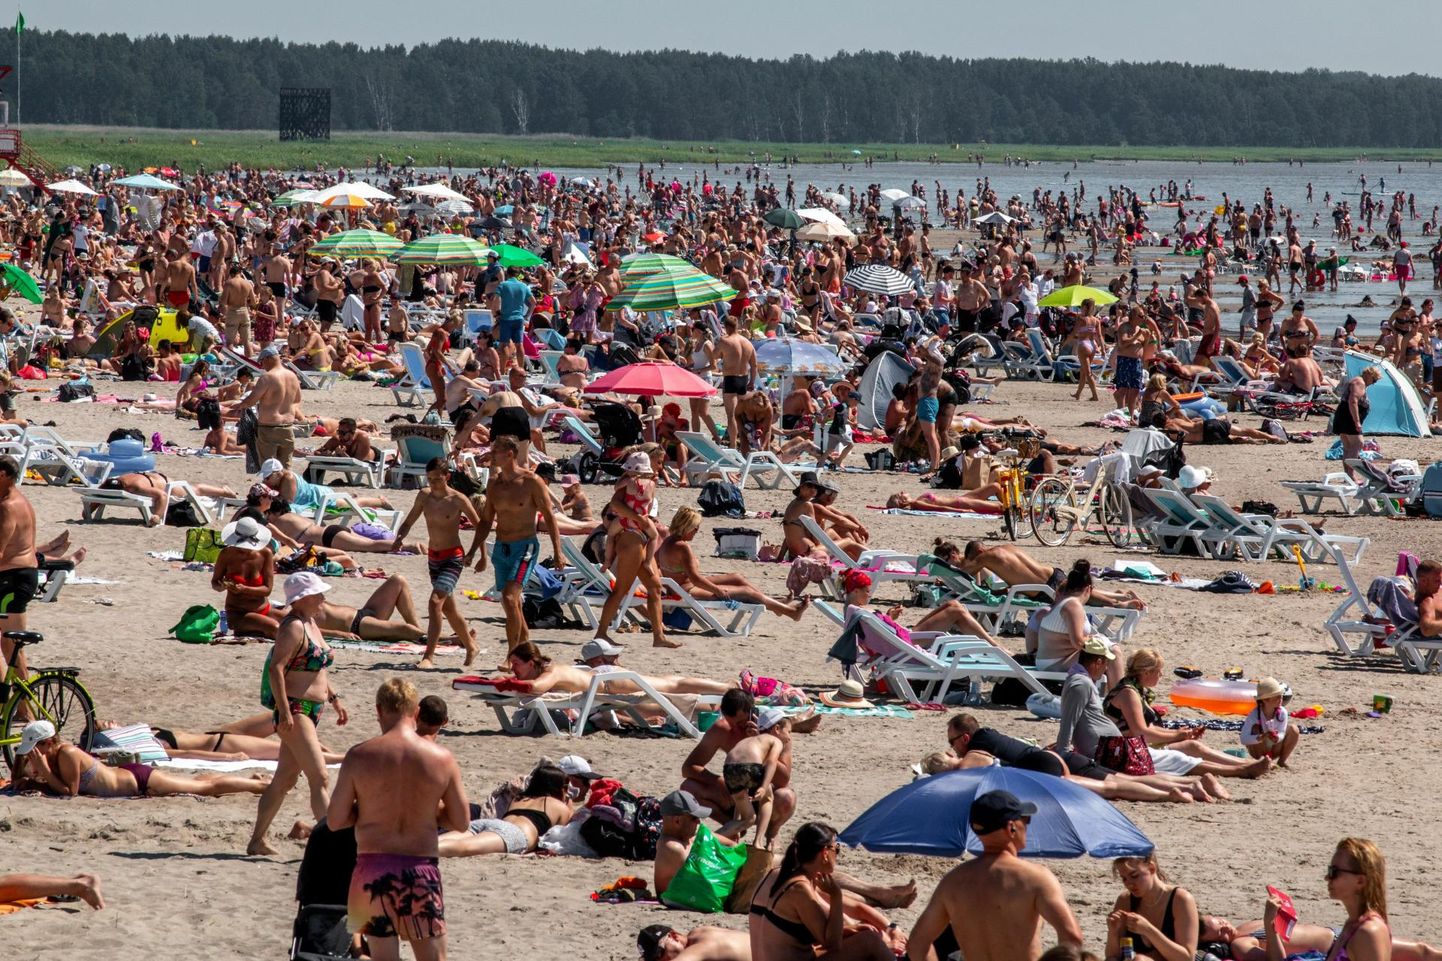 Soe ilm meelitas palju rahvast ka Pärnu randa. Näiteks oli 25. juunil rahvaarvuks märgitud 15 000 inimest.